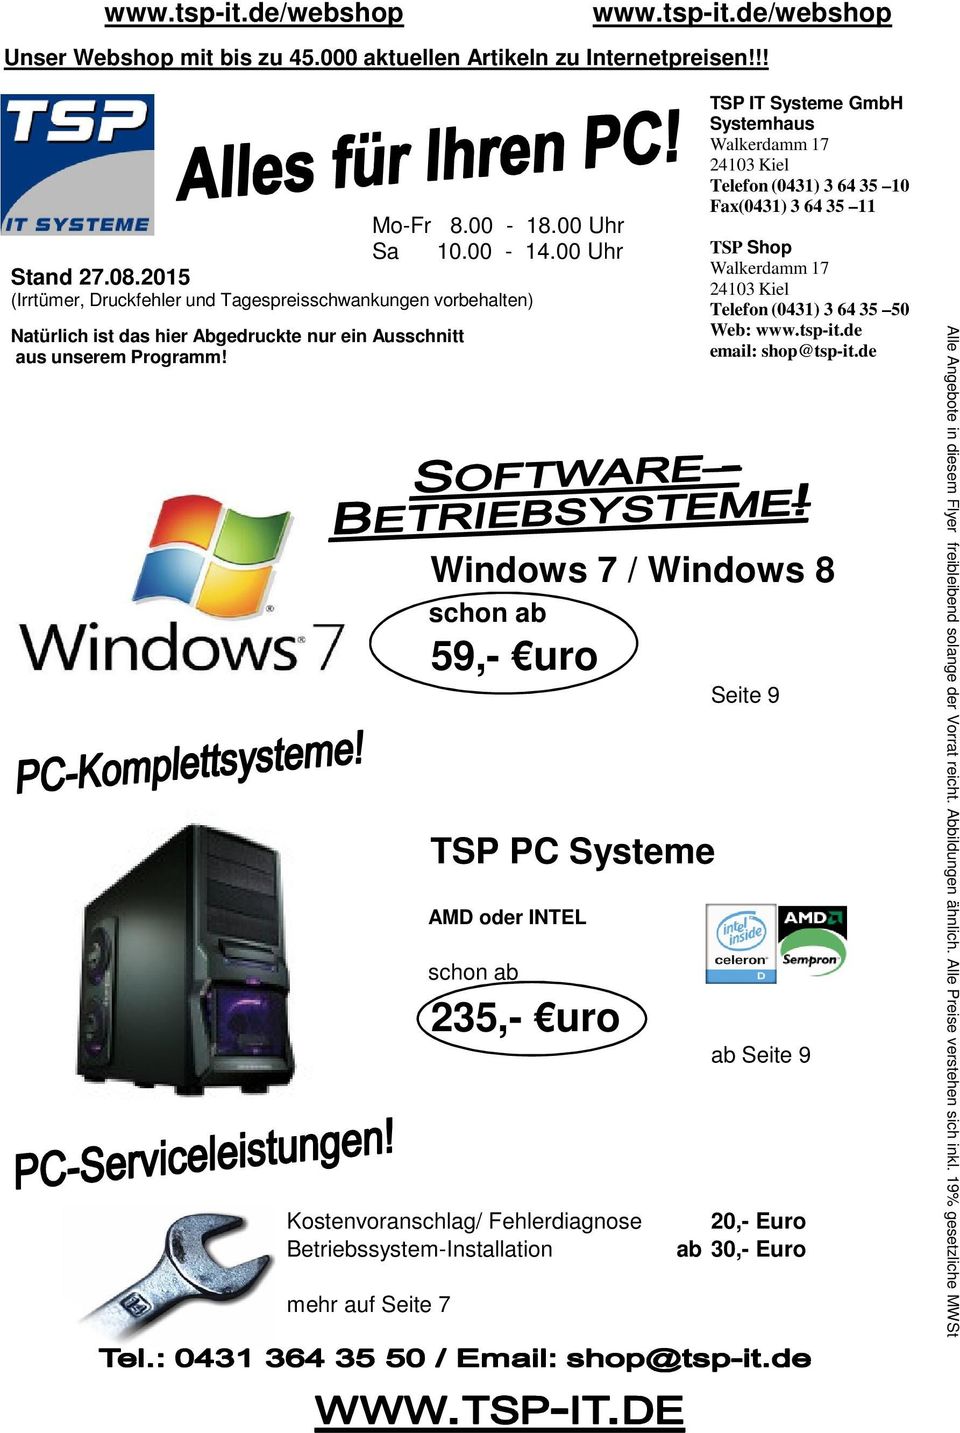 Windows 7 / Windows 8 schon ab 59,- uro AMD oder INTEL schon ab Kostenvoranschlag/ Fehlerdiagnose Betriebssystem-Installation mehr auf Seite 7 TSP PC Systeme 235,- uro TSP IT Systeme GmbH Systemhaus